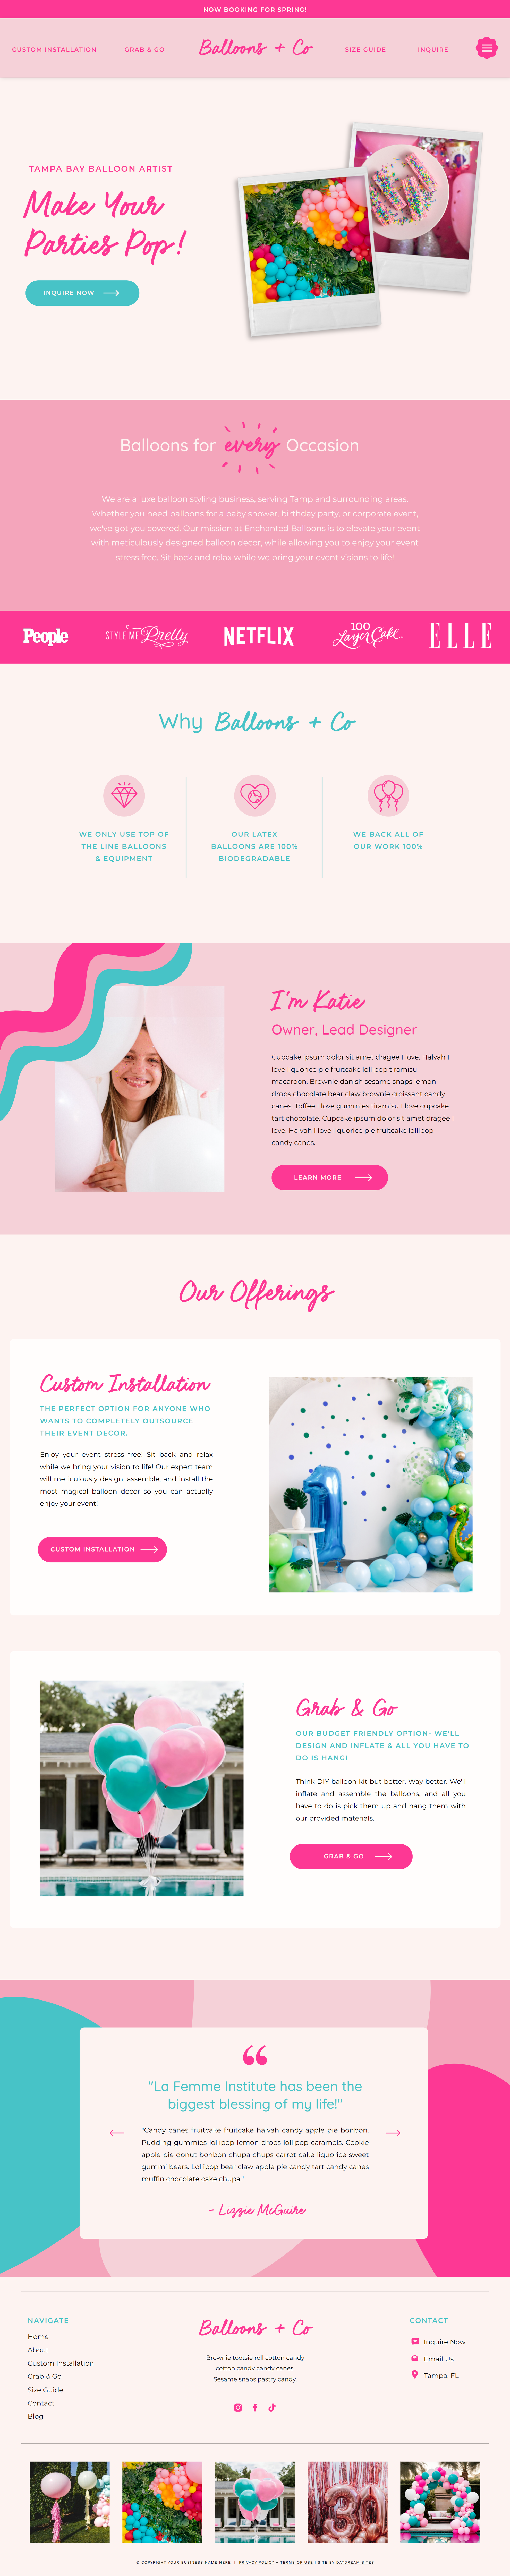 Pink, fun, creative balloon artist website template